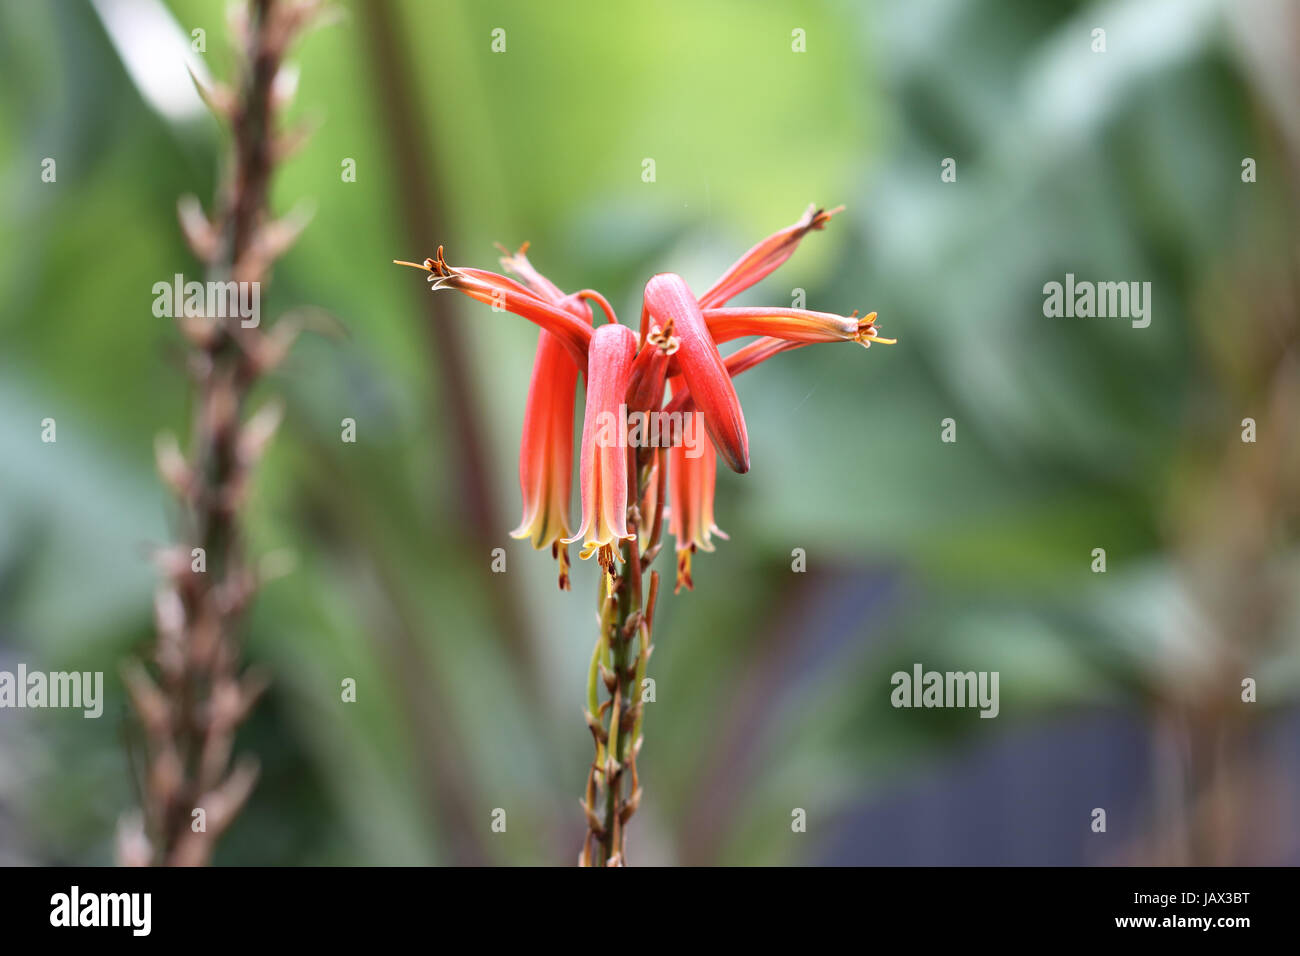 Nahaufnahme von Aloevera Blumen isoliert gegen hellen Hintergrund Stockfoto